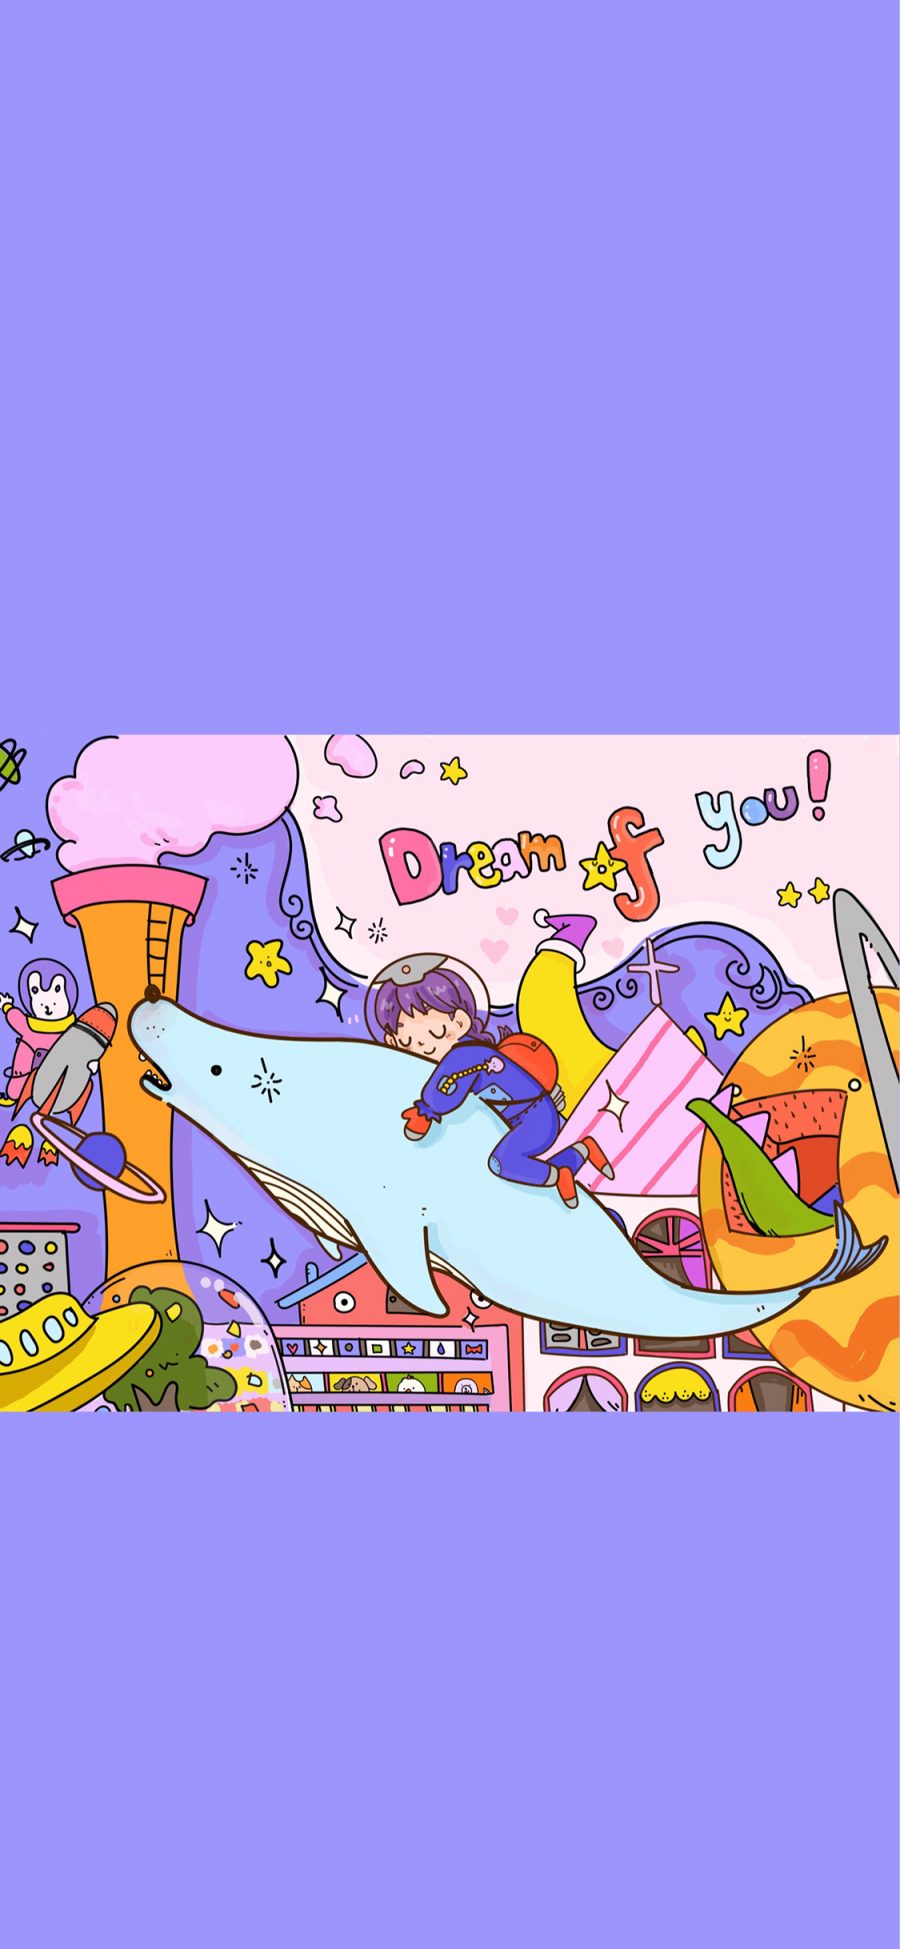 [2436×1125]插图 鲸鱼 男孩 dream of you 梦幻 苹果手机动漫壁纸图片